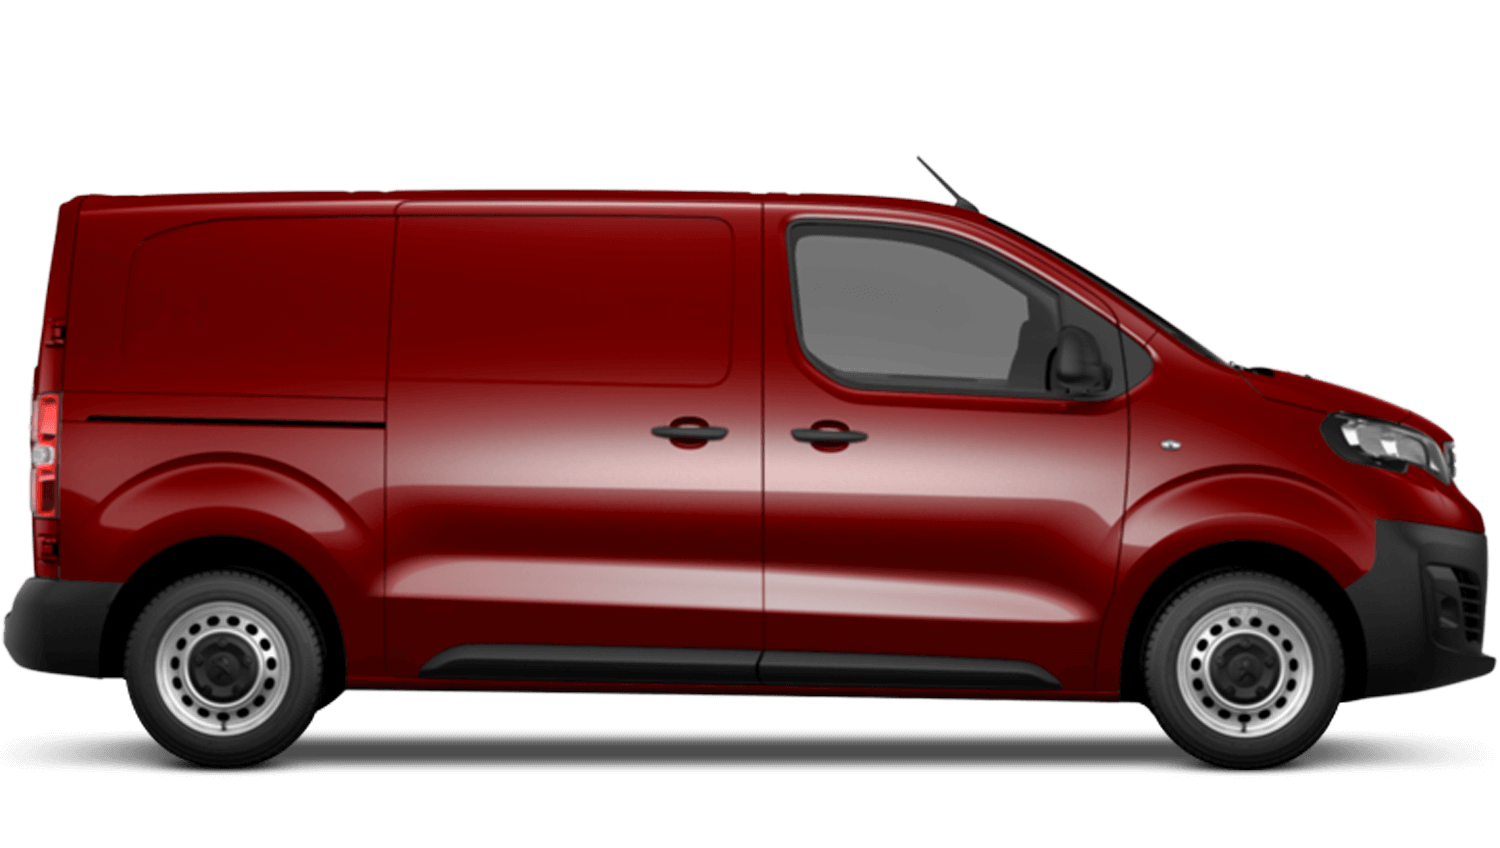 new peugeot expert van for sale